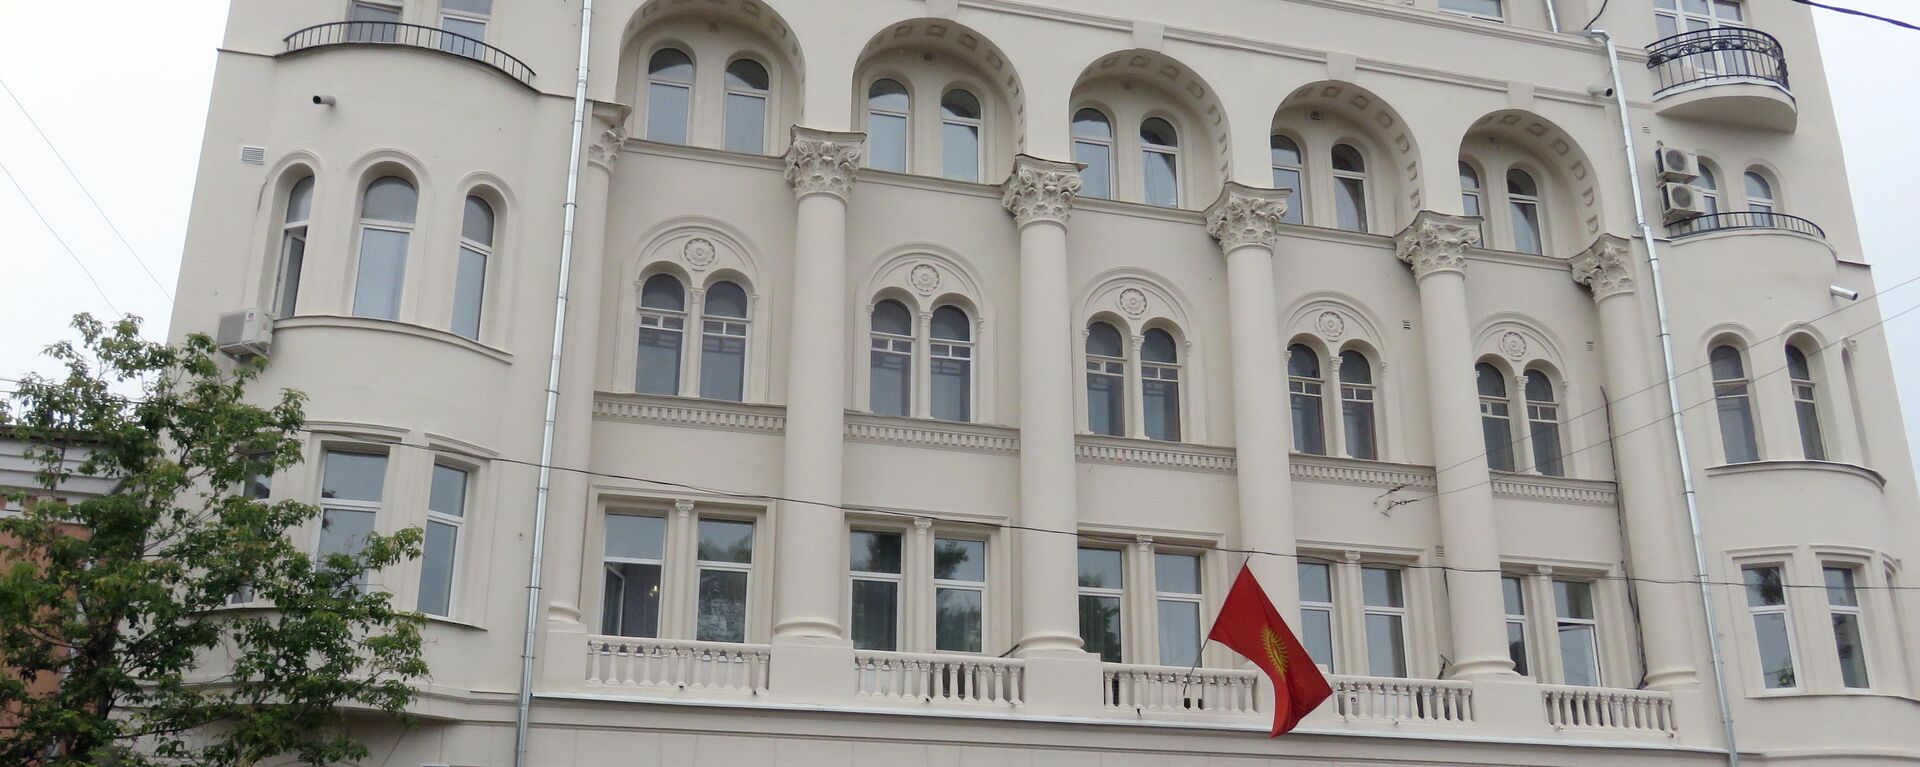 Посольства Кыргызстана в разных странах  - Sputnik Кыргызстан, 1920, 24.07.2021